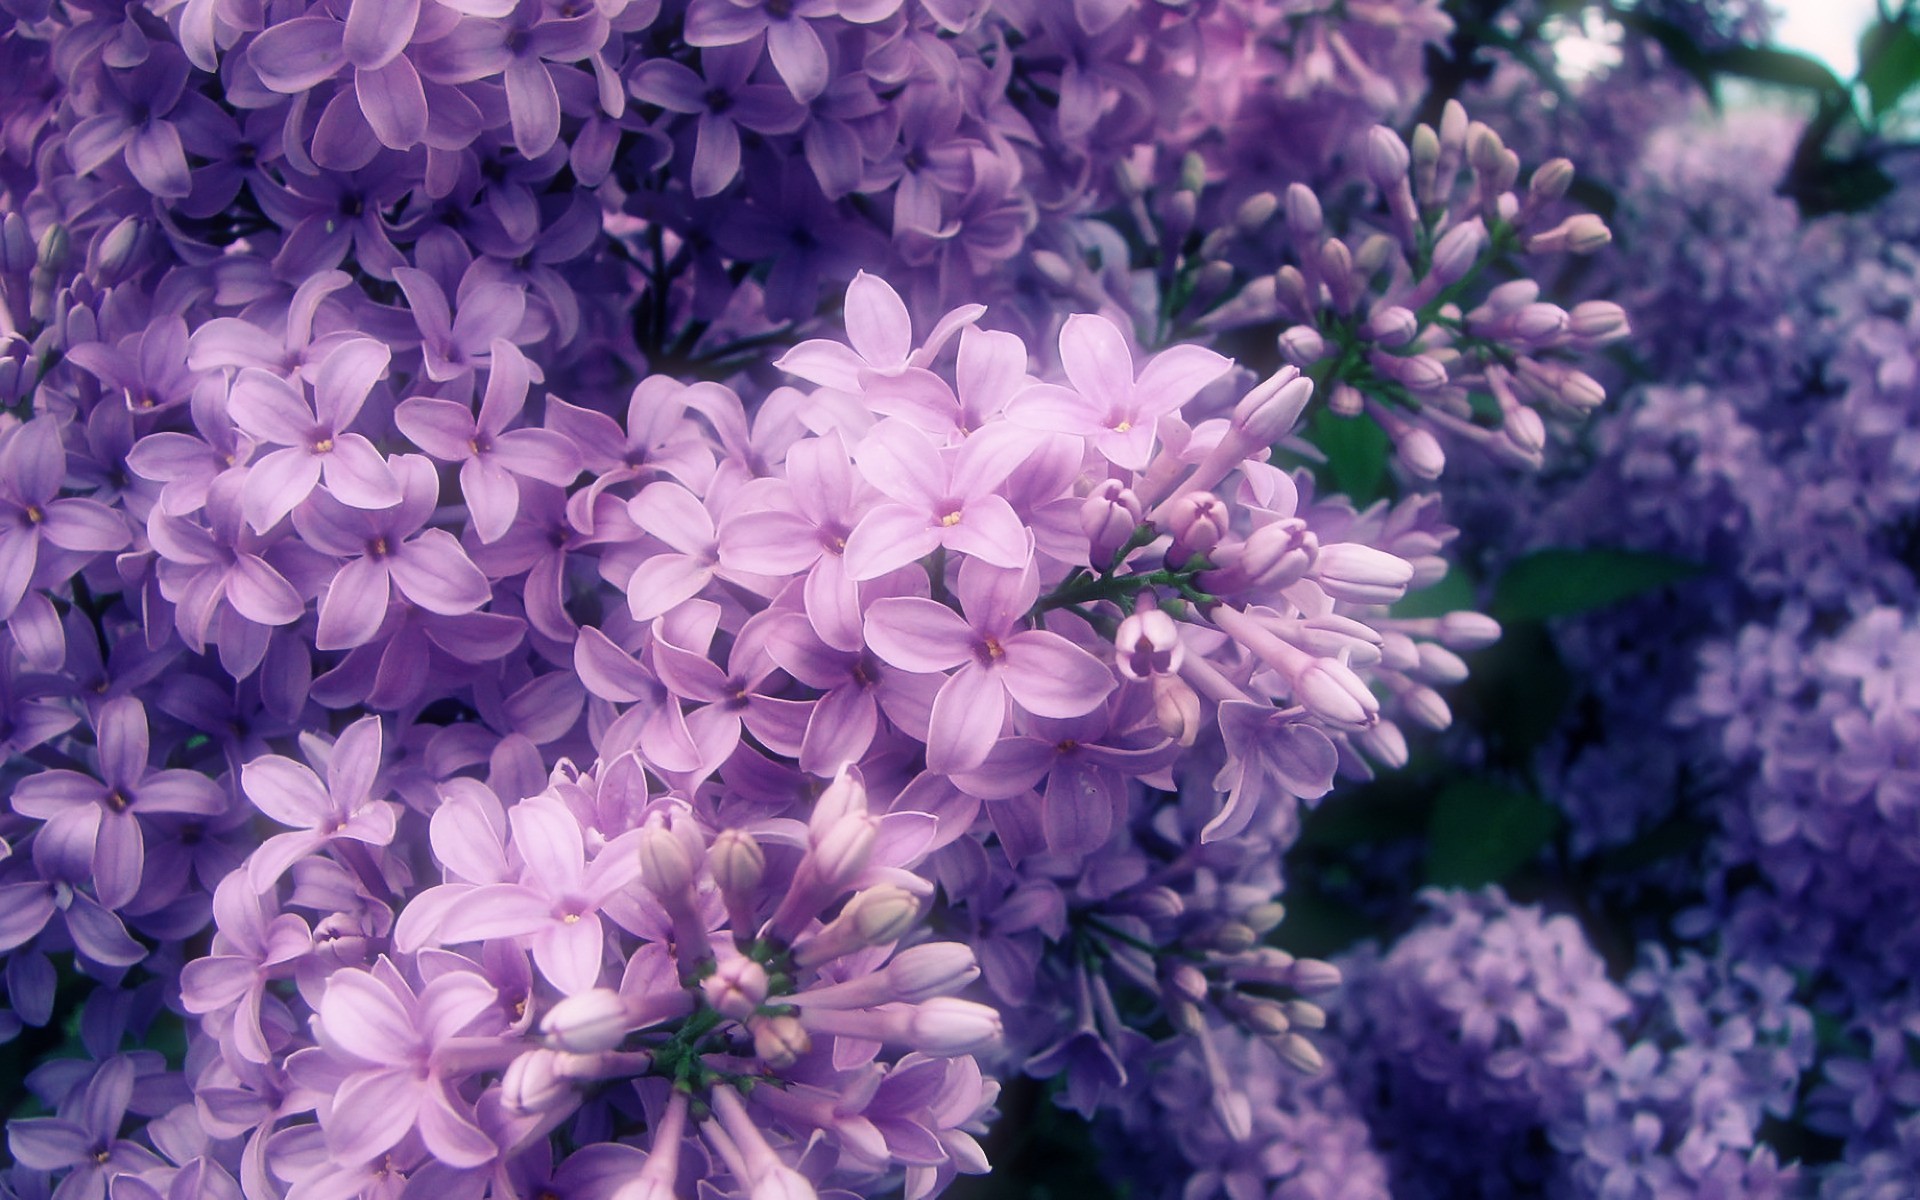 Sea of purple flowers wallpaper | AllWallpaper.in #8187 | PC | en